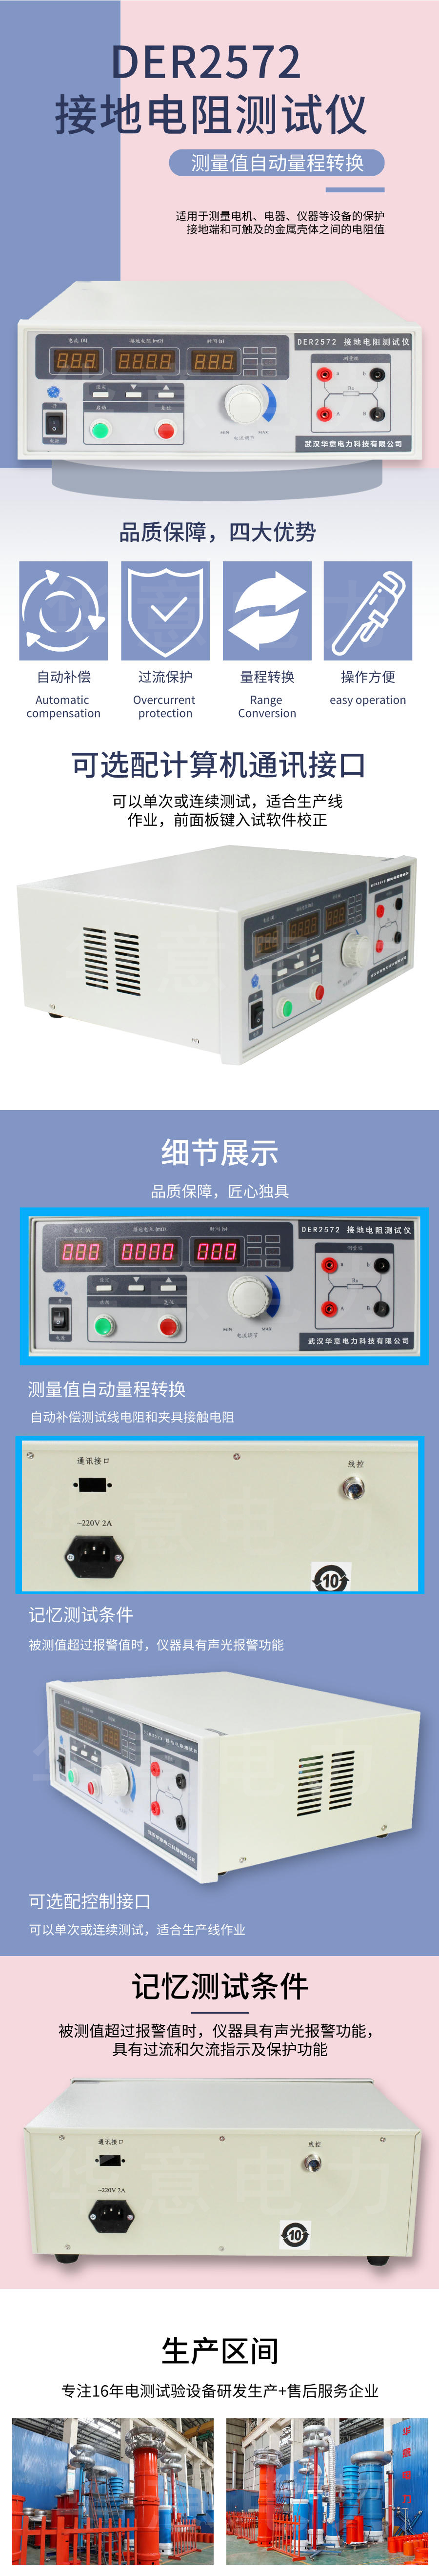 接地电阻测试仪_自定义px_2021-07-23-0.jpeg